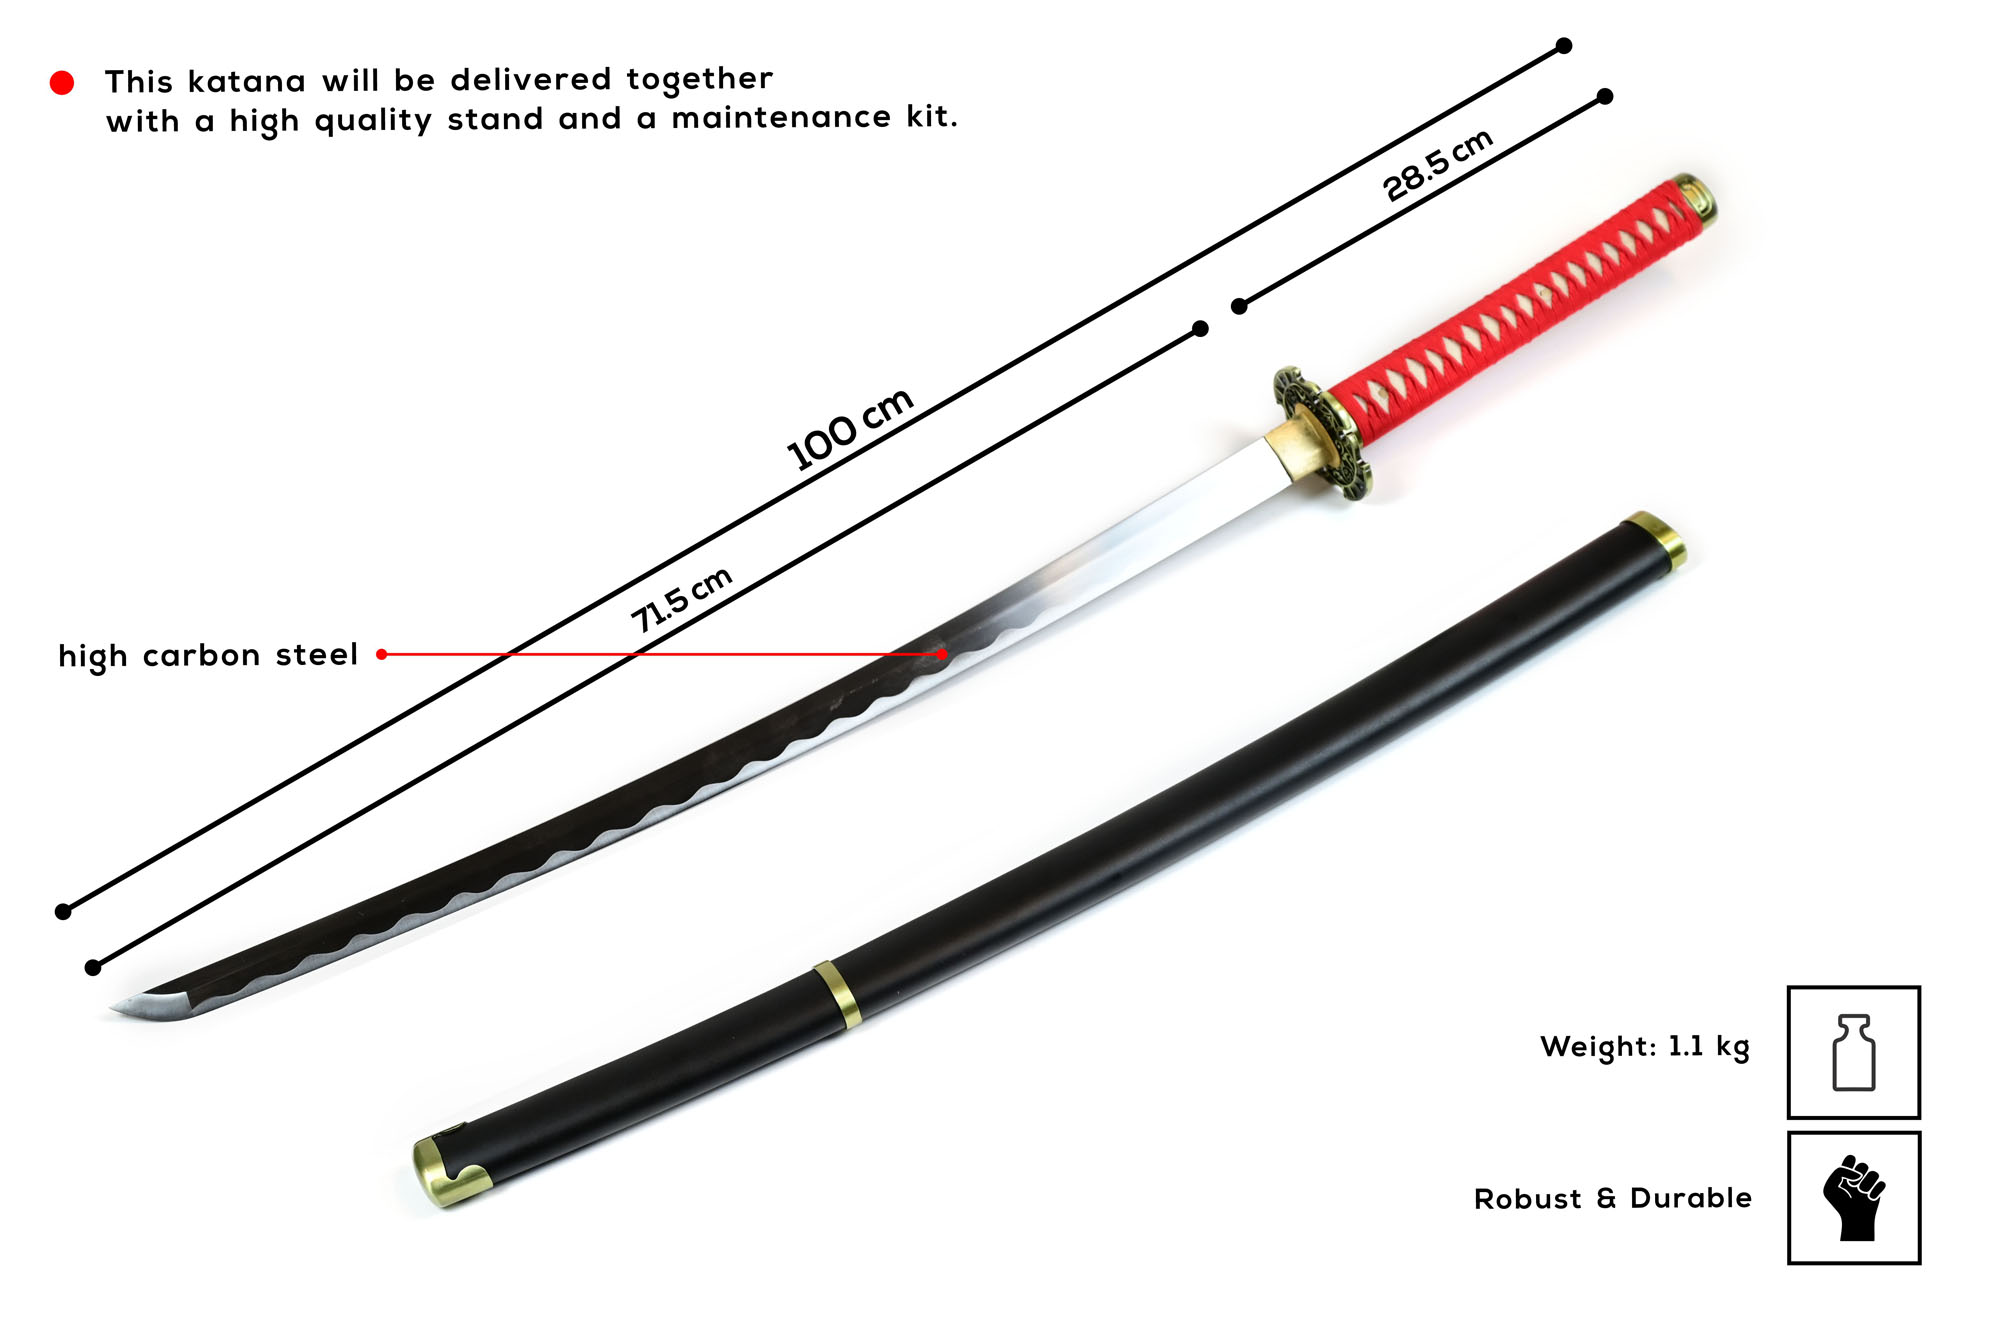 Sword of Ryu Hayabusa handforged